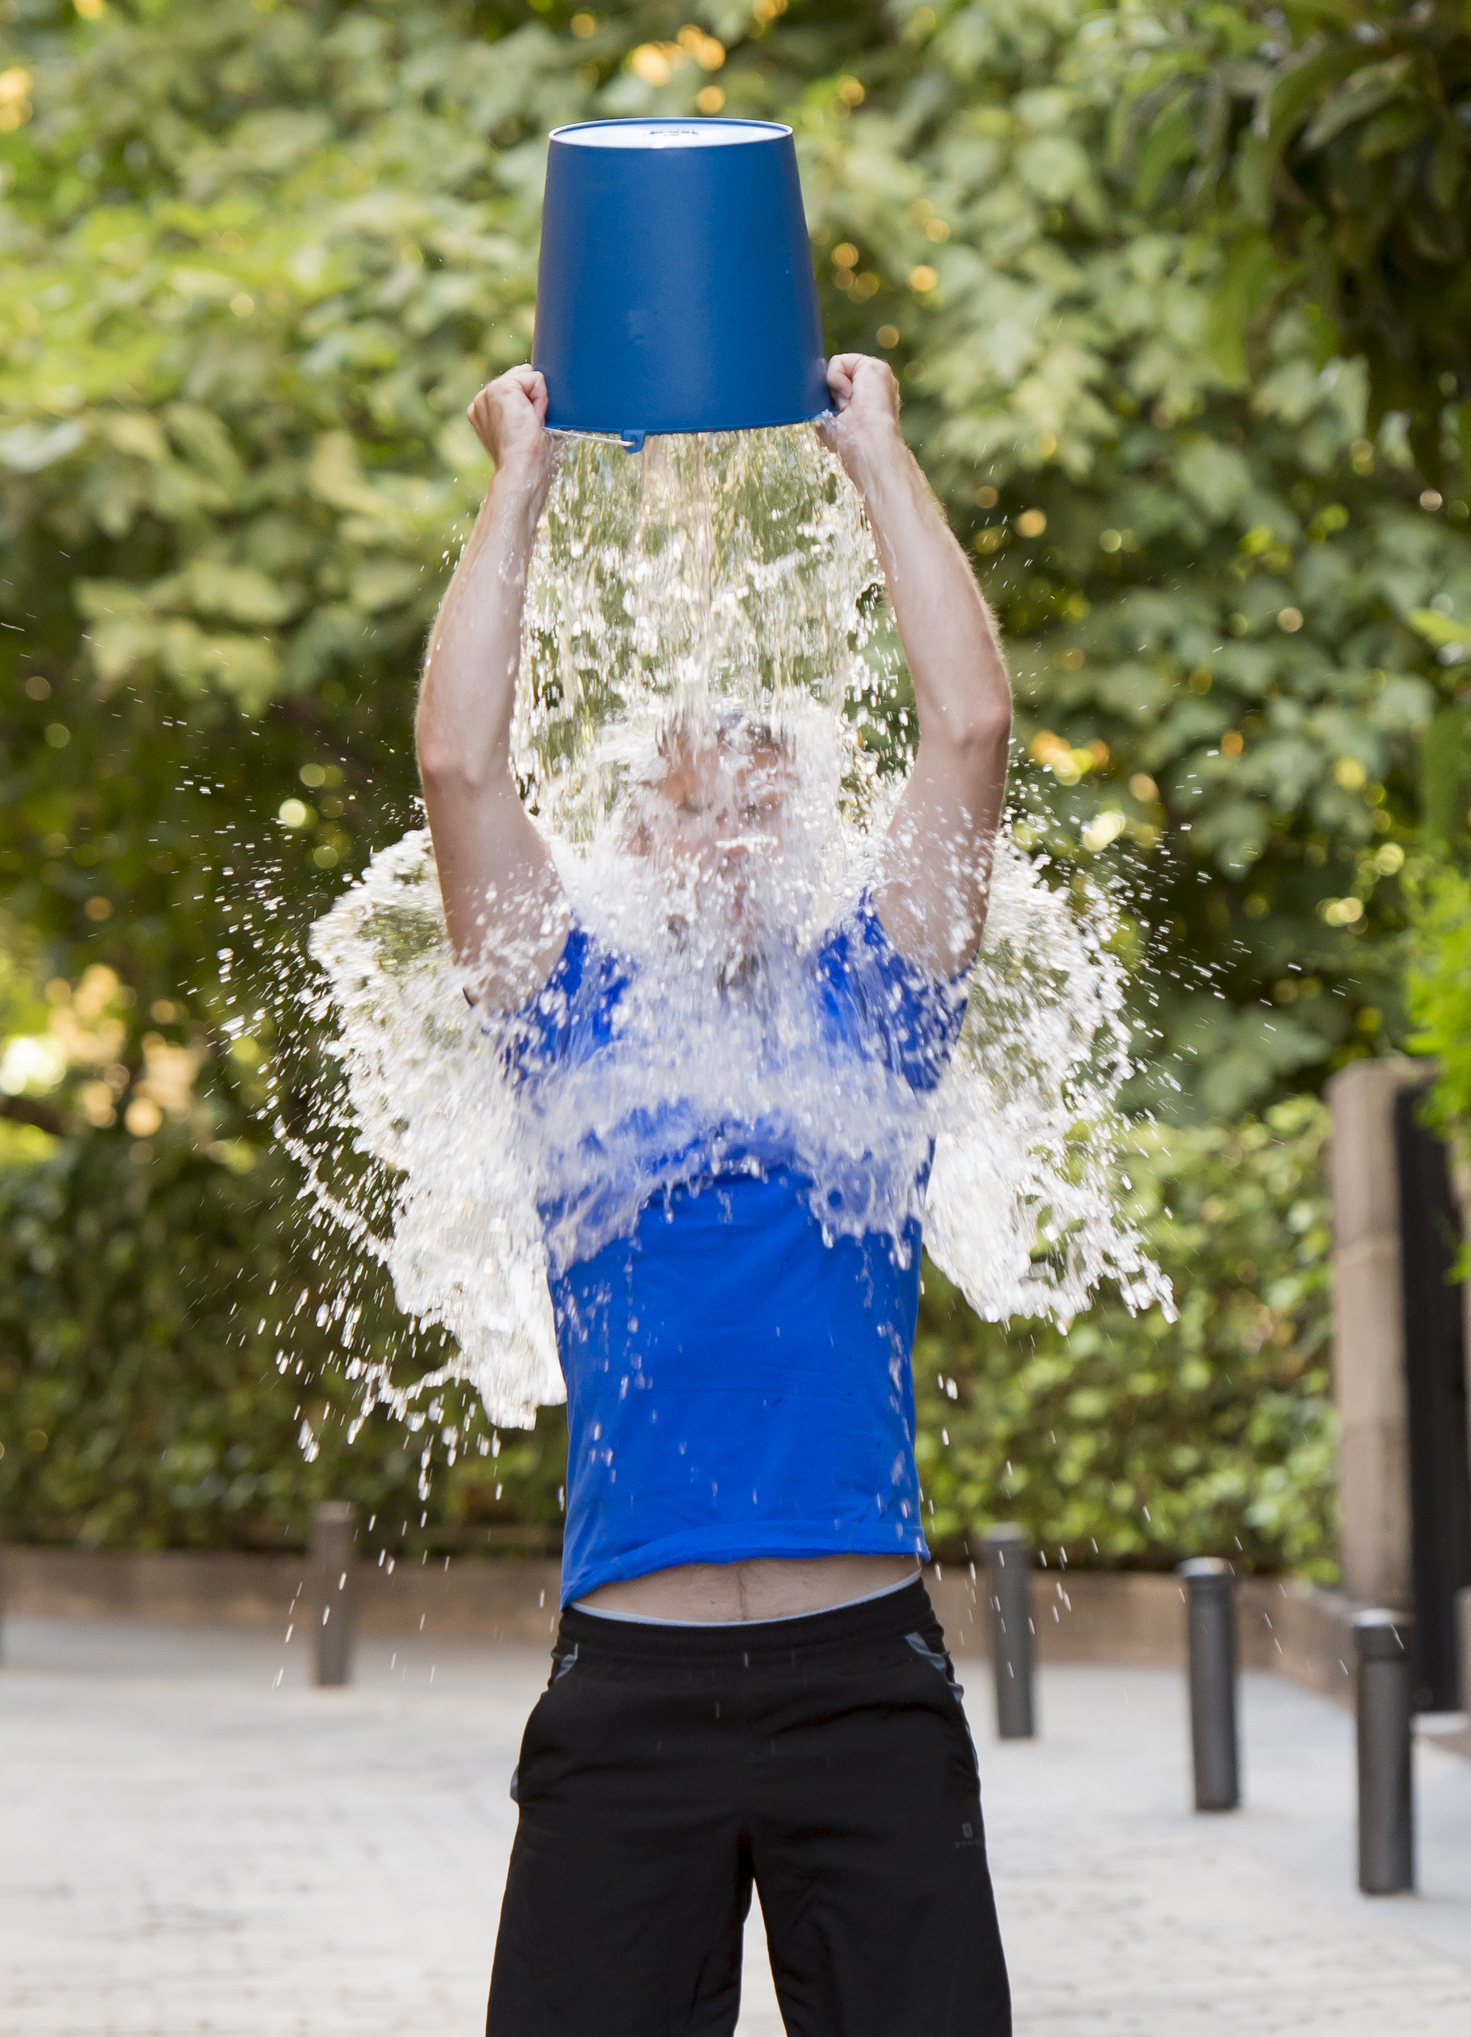 debbie kravitz recommends Wet Tee Shirt Ice Water Challenge